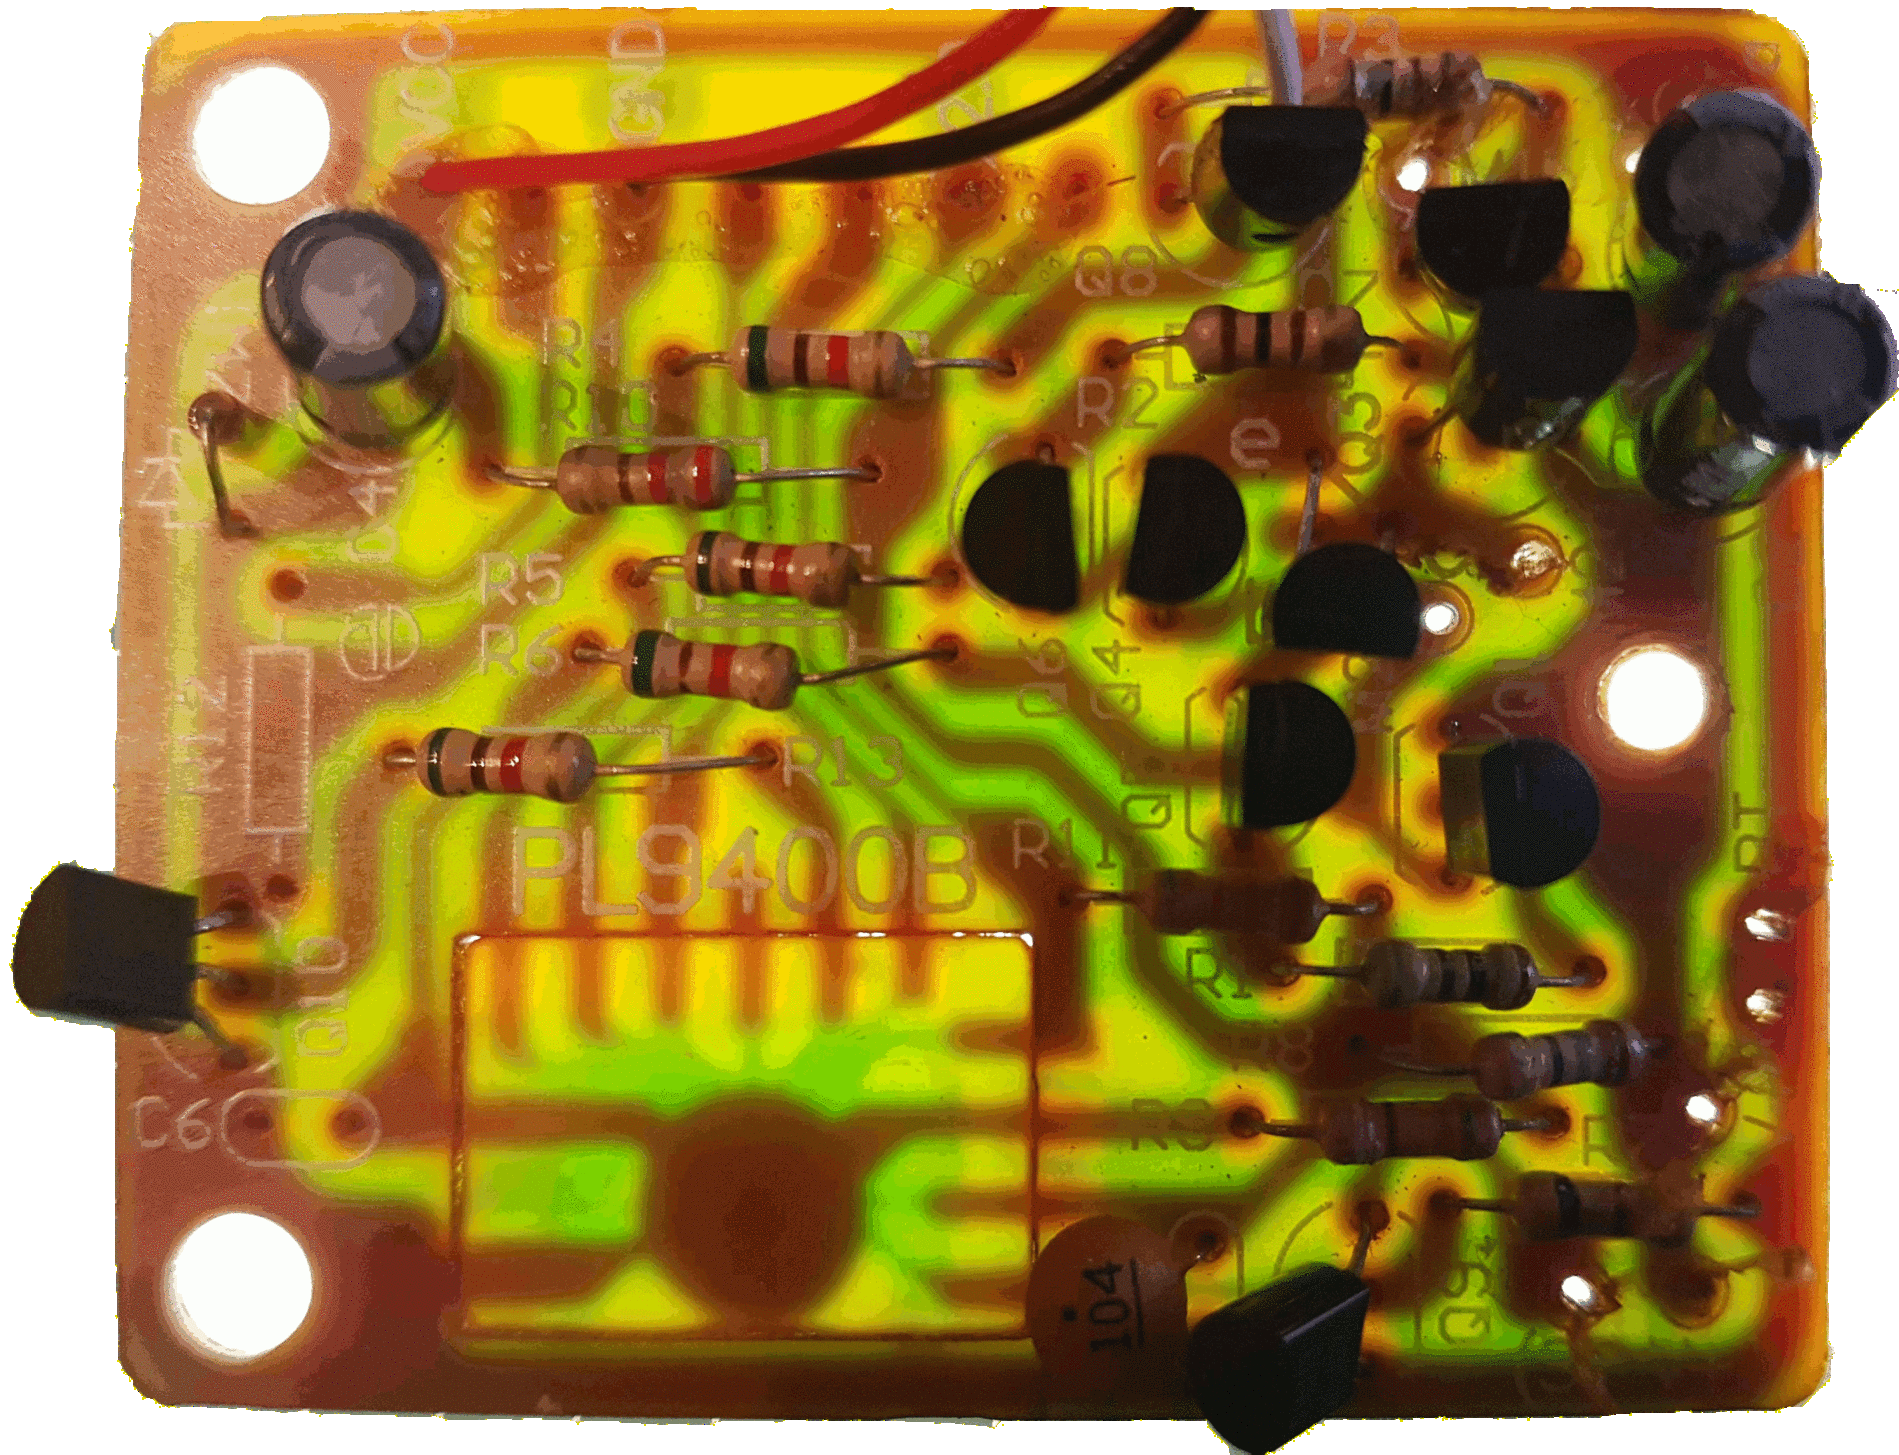 Le circuit imprimé par transparence sur une table lumineuse